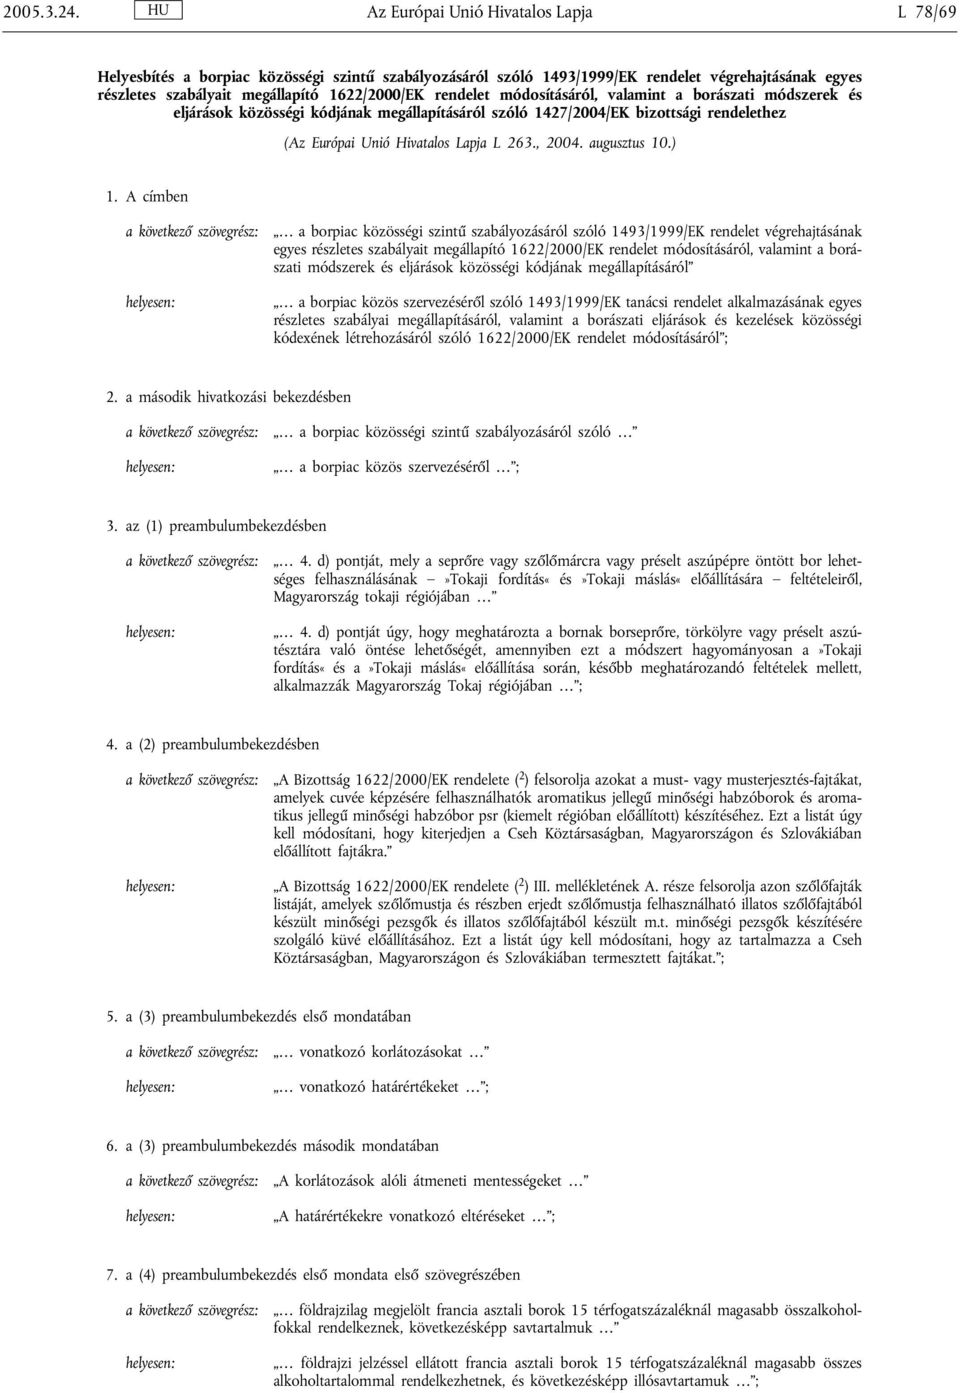 módosításáról, valamint a borászati módszerek és eljárások közösségi kódjának megállapításáról szóló 1427/2004/EK bizottsági rendelethez (Az Európai Unió Hivatalos Lapja L 263., 2004. augusztus 10.